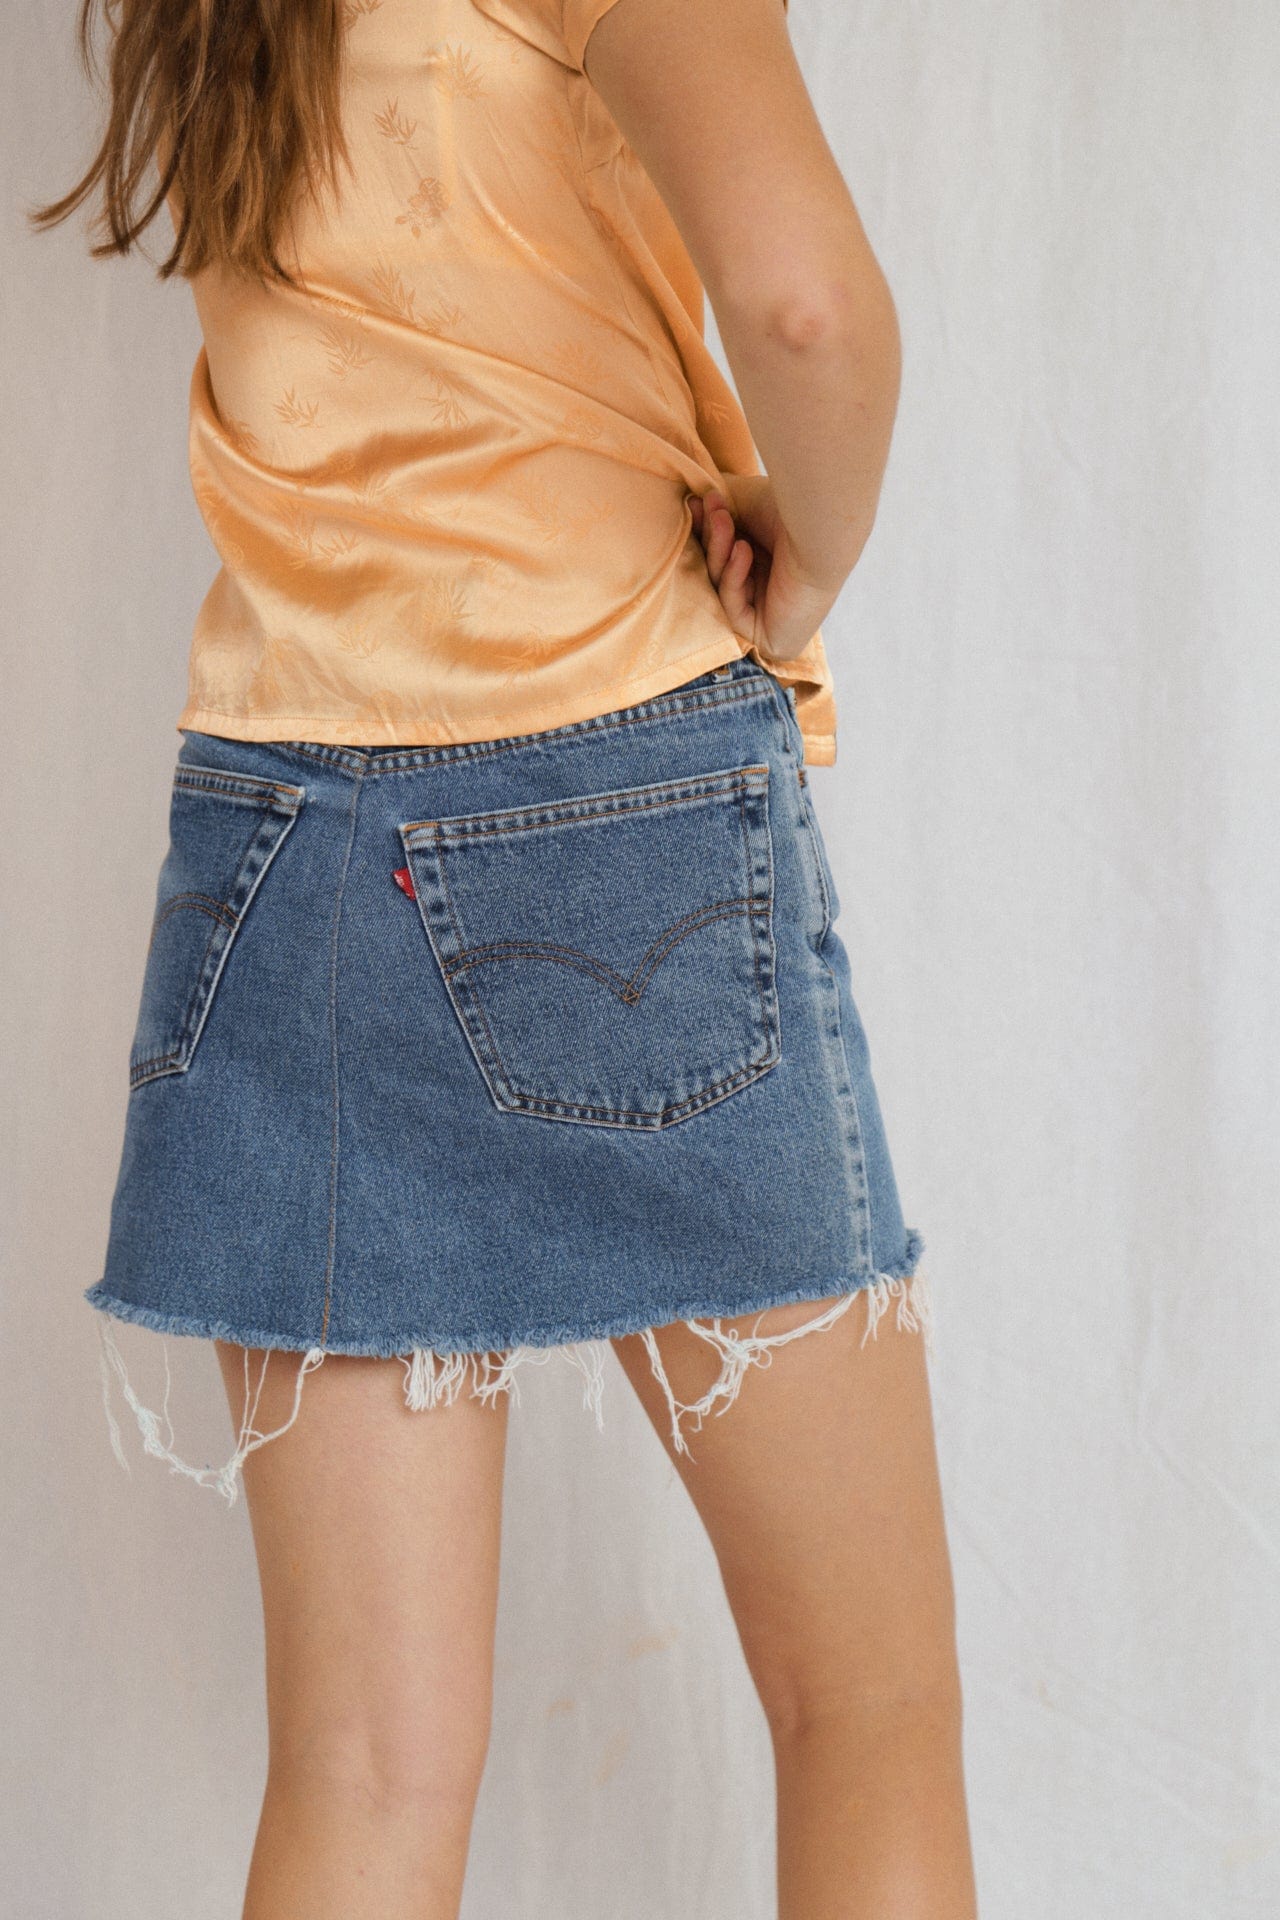 SisterGolden Skirt Vintage Remade Levi Mini Skirt